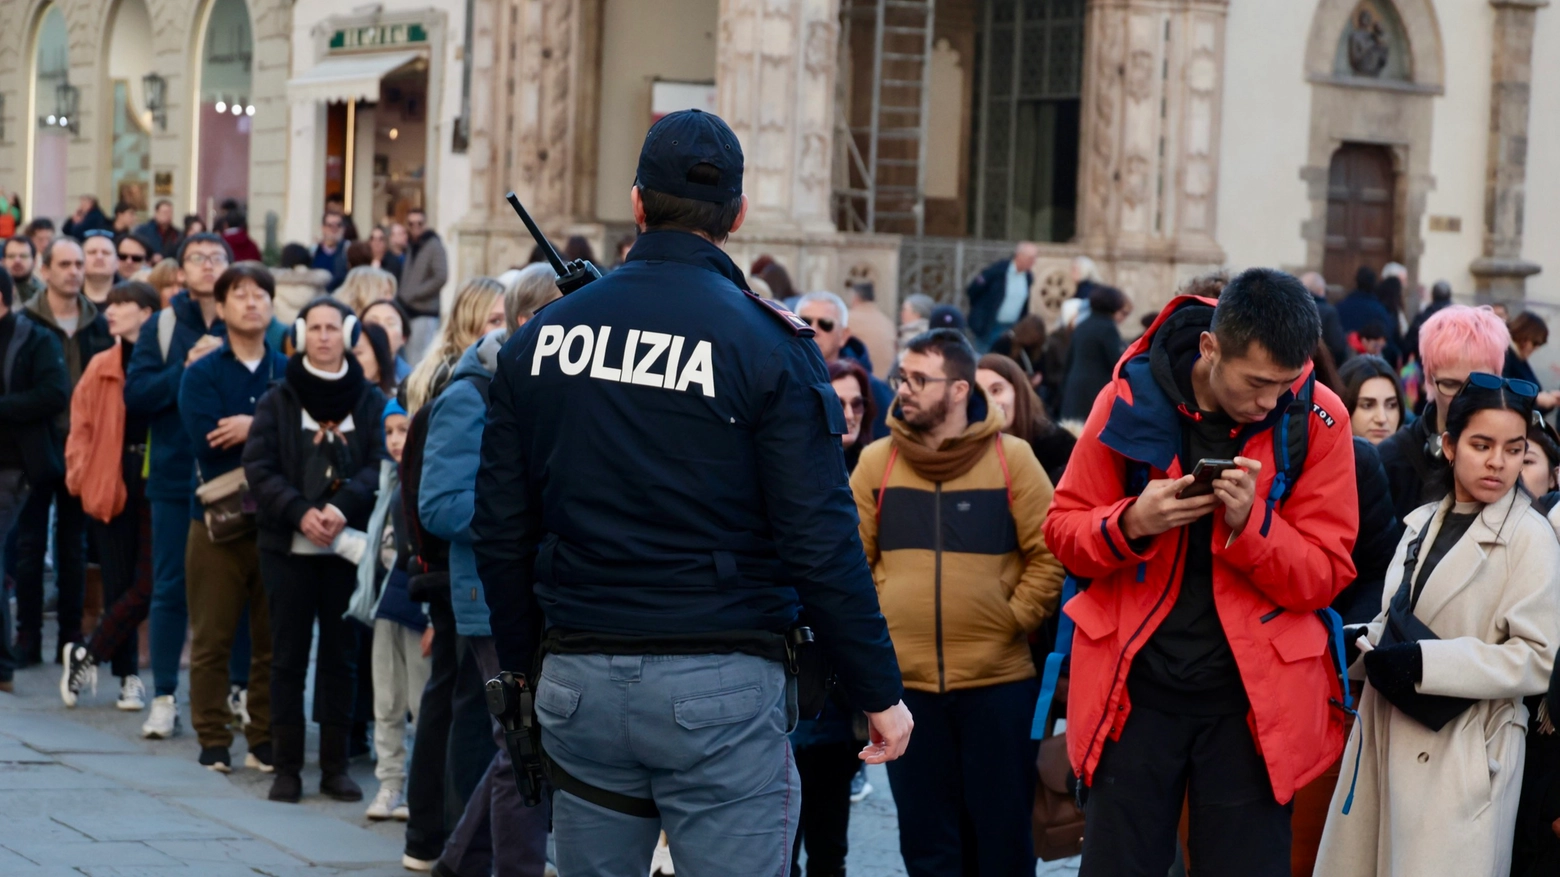 Allarme in Duomo per una valigia sospetta: evacuata la cattedrale. Polizia sul posto (New Press Photo)